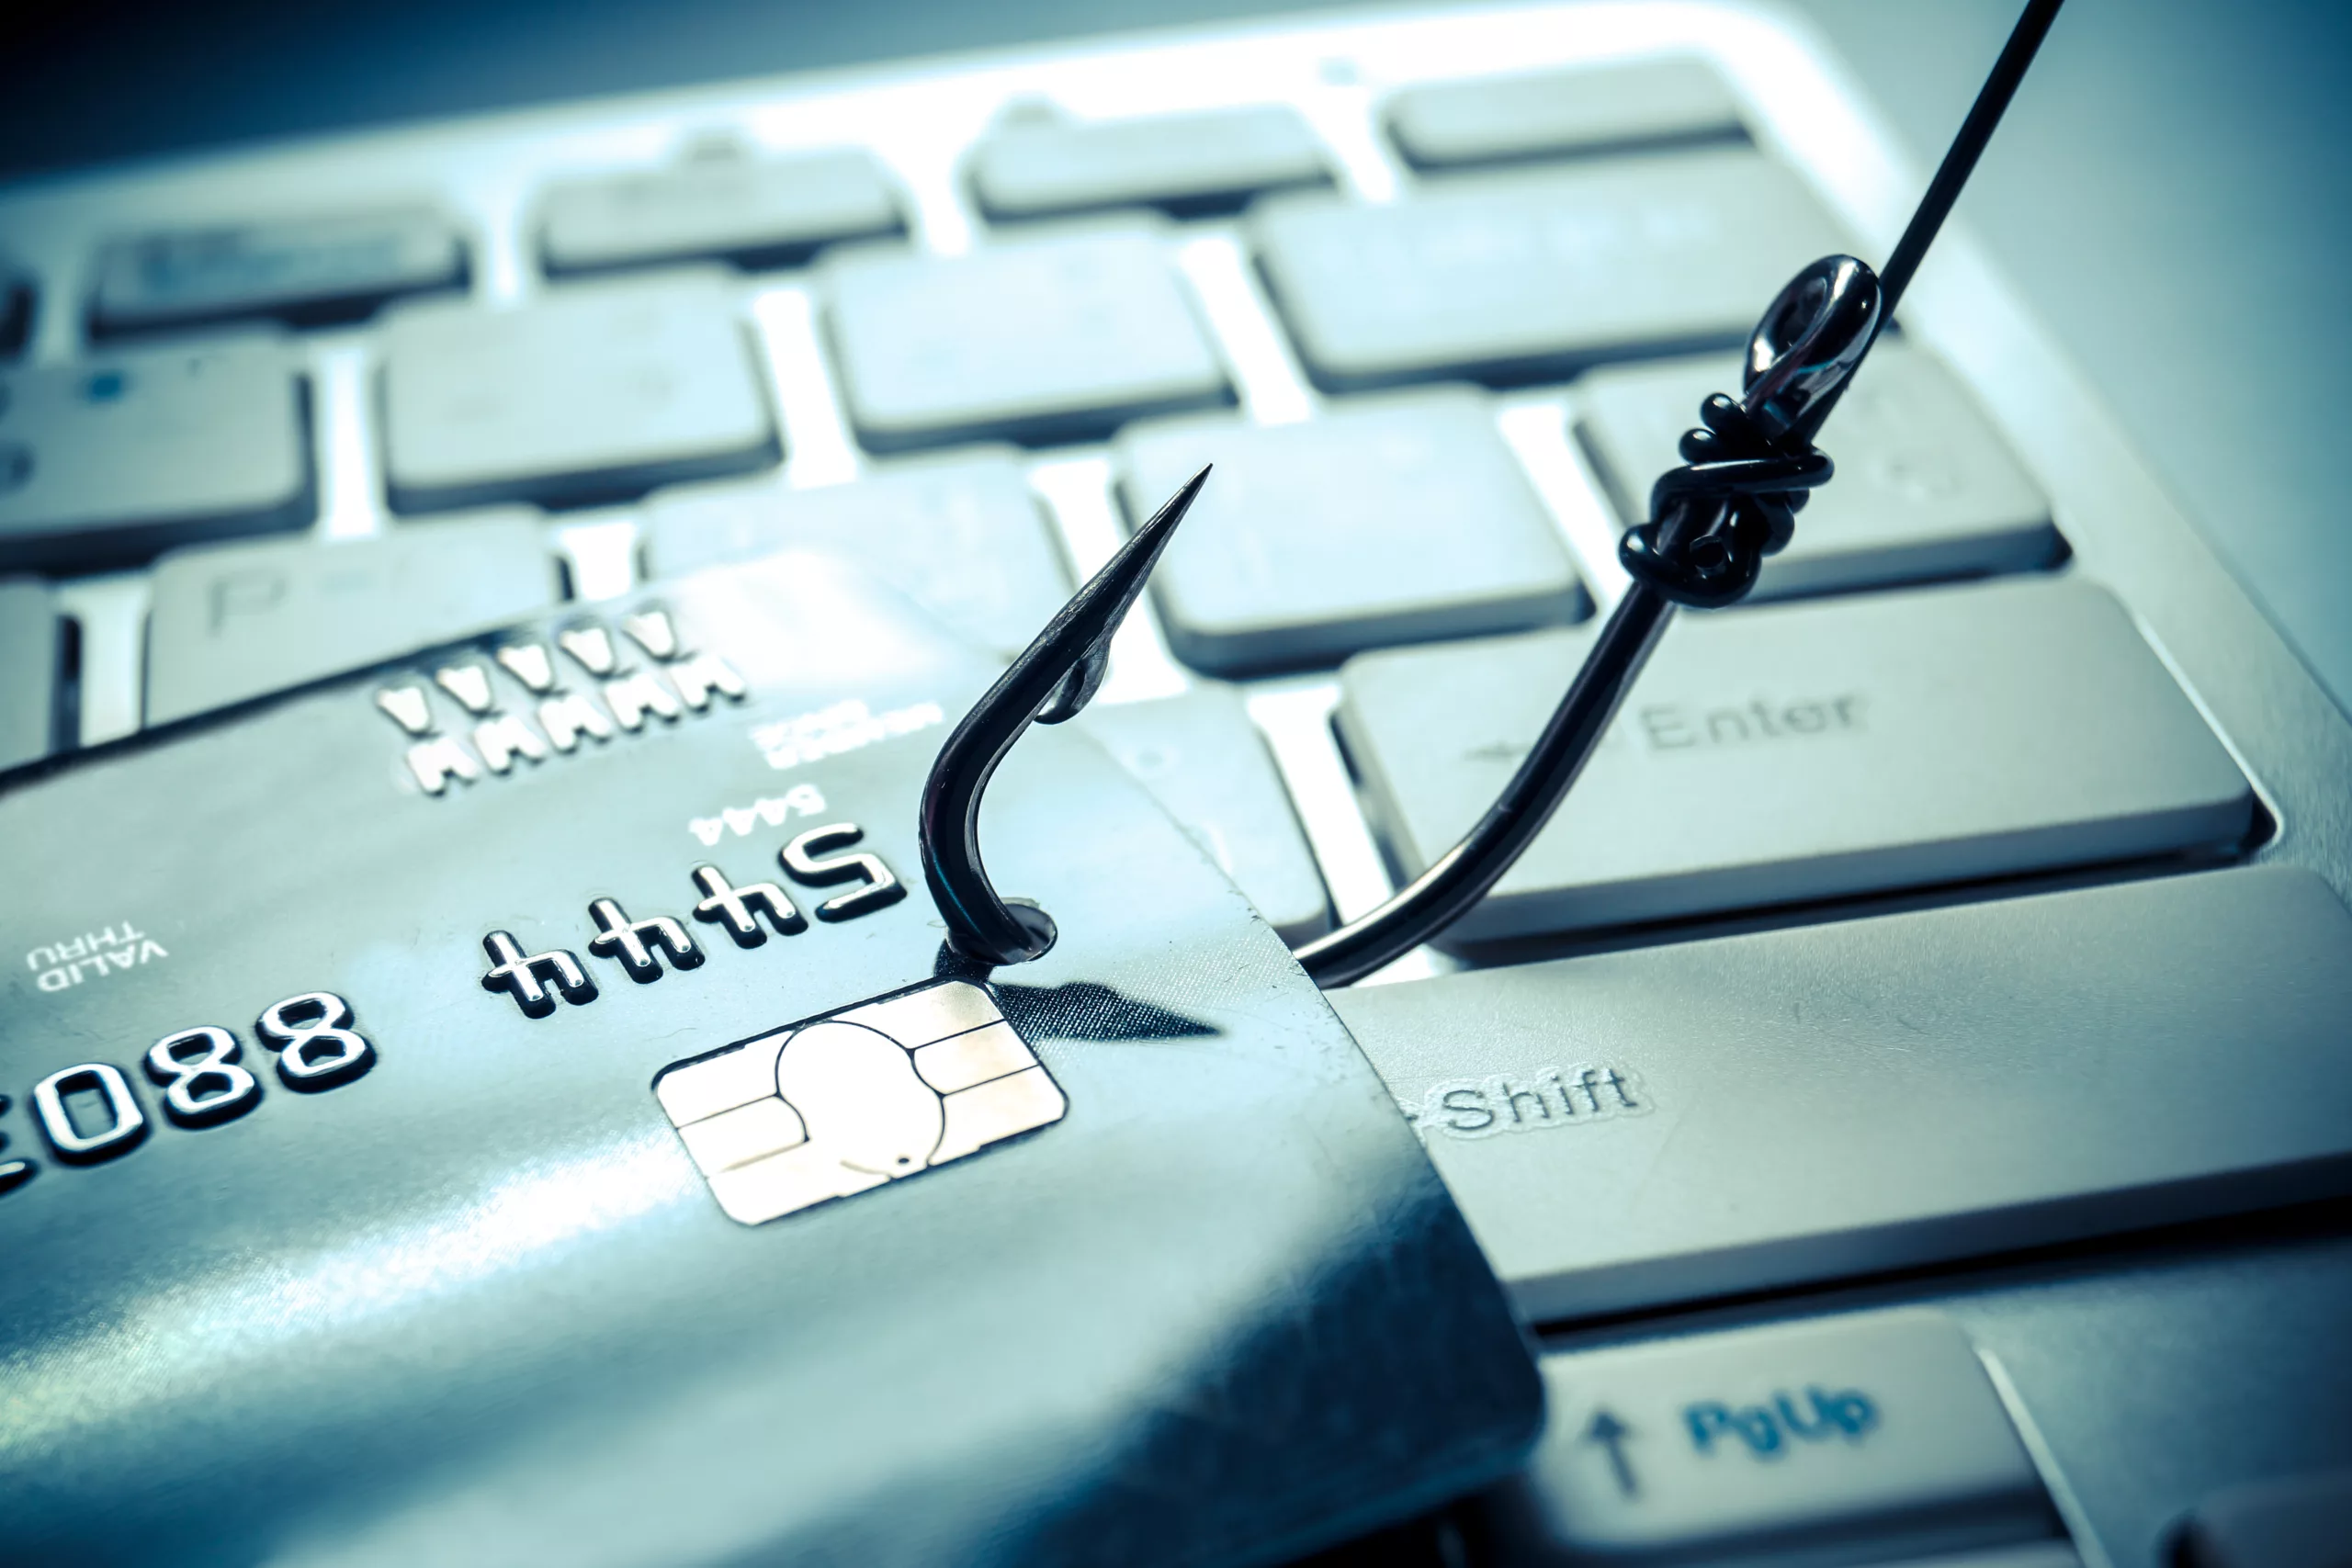 phishing scam fraud alert